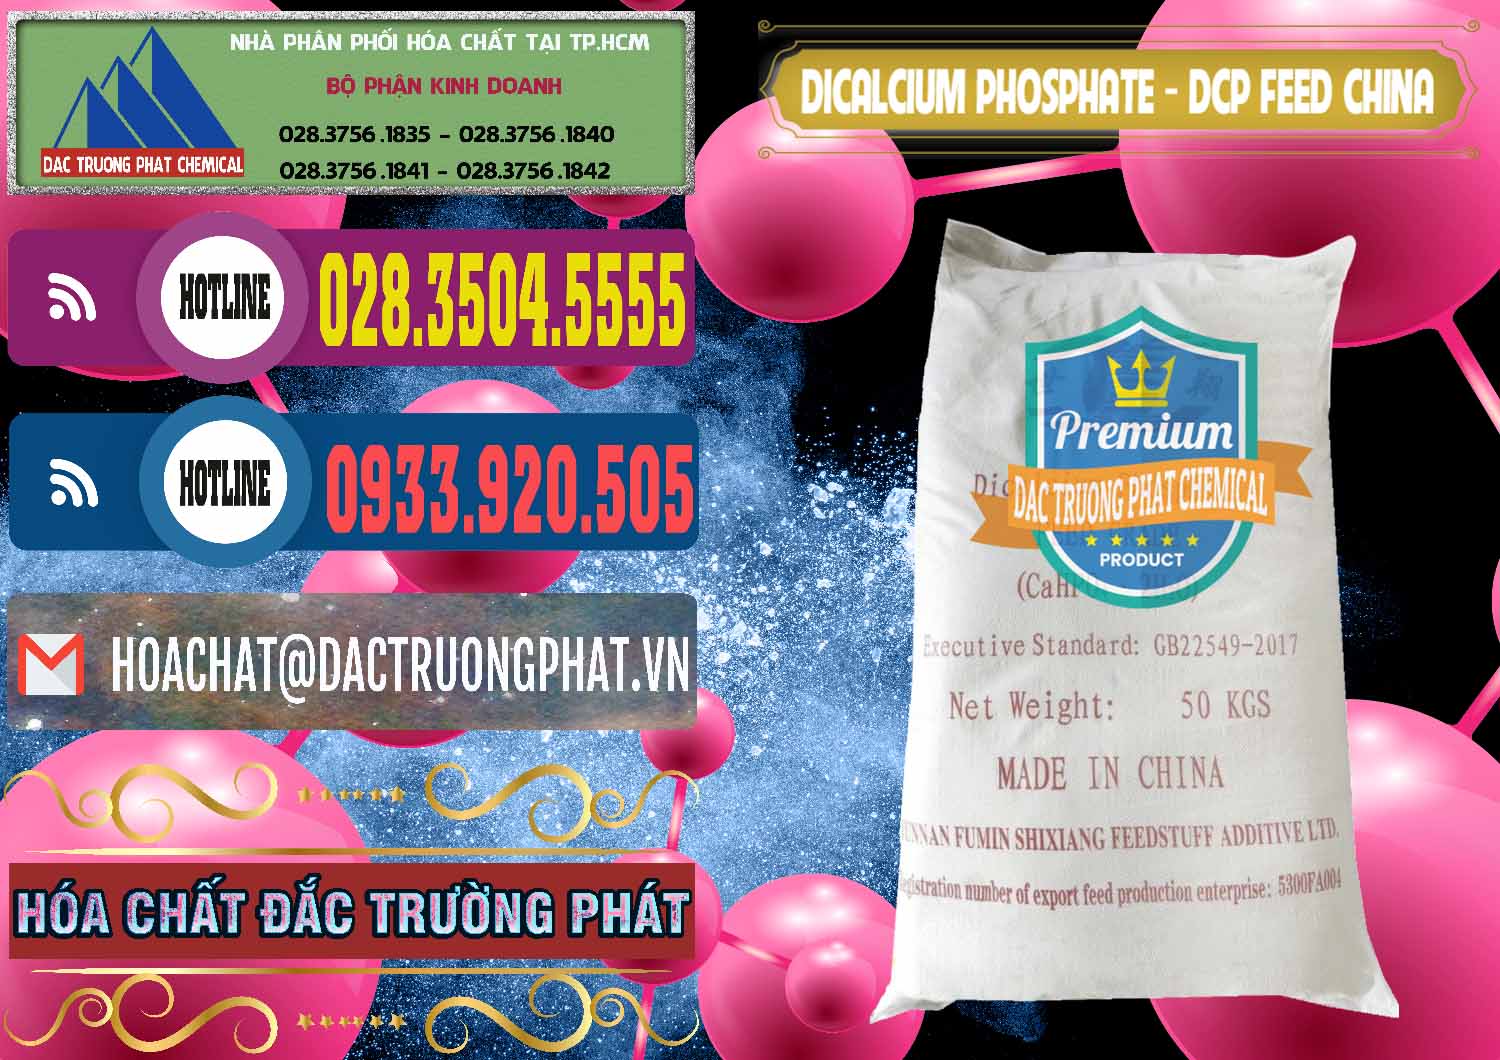 Nơi chuyên bán và phân phối Dicalcium Phosphate - DCP Feed Grade Trung Quốc China - 0296 - Công ty phân phối - nhập khẩu hóa chất tại TP.HCM - muabanhoachat.com.vn